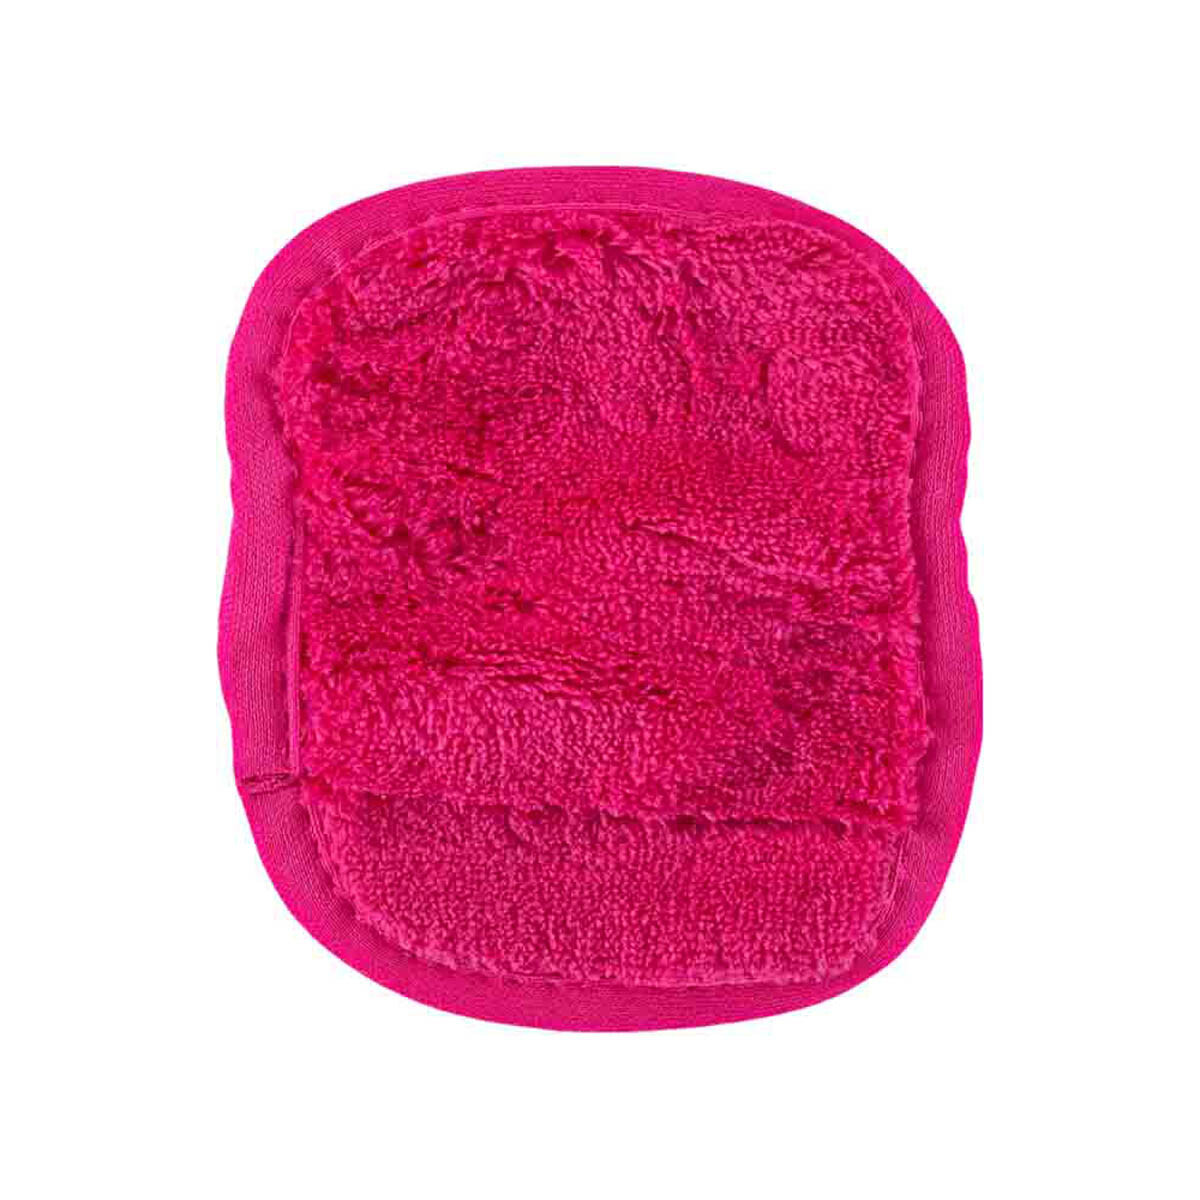 MAKEUP ERASER Watermelon 7-Day Set Mikrofasertuch Reinigungstuch Gesichtsreinigungstuch Textur Fasern